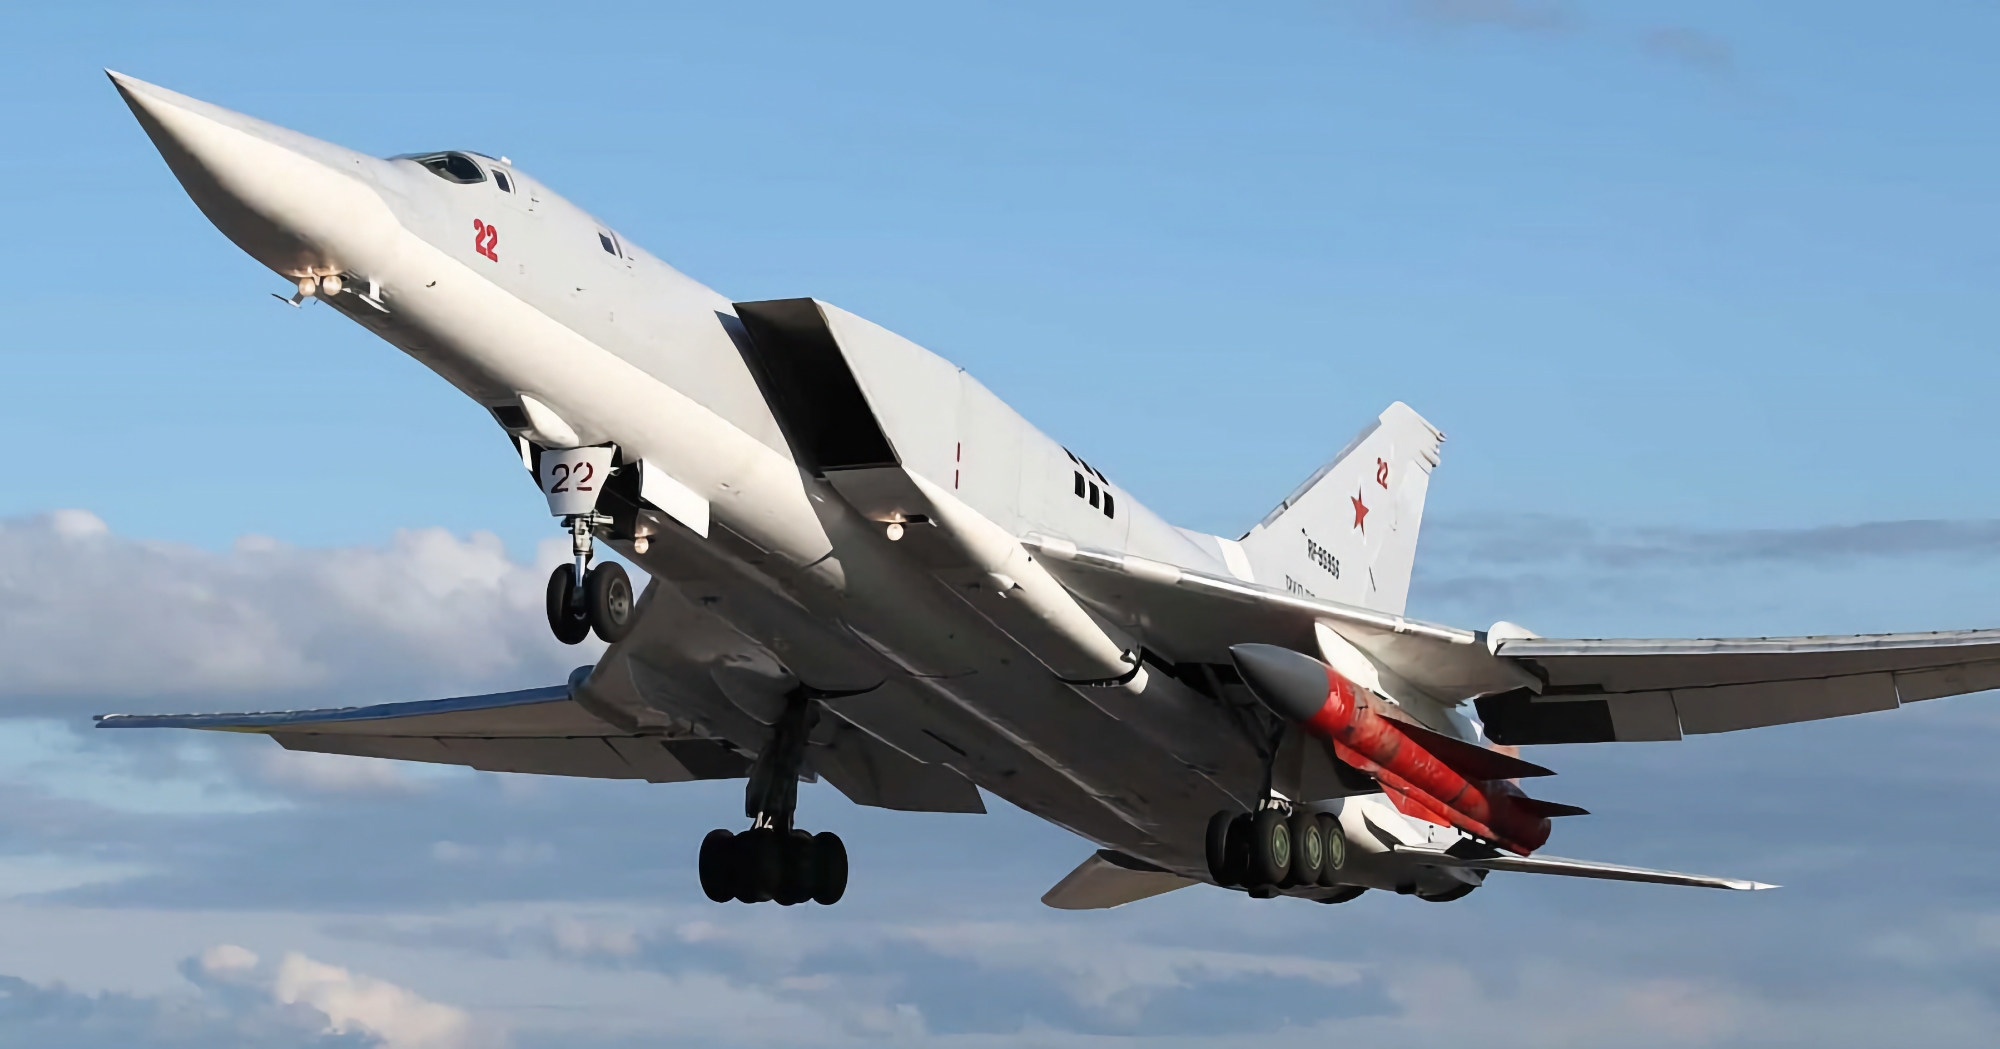 Ukrainas luftvärnssystem har för första gången förstört ett ryskt strategiskt bombplan av typen Tu-22M3 med Kh-22 kryssningsrobotar